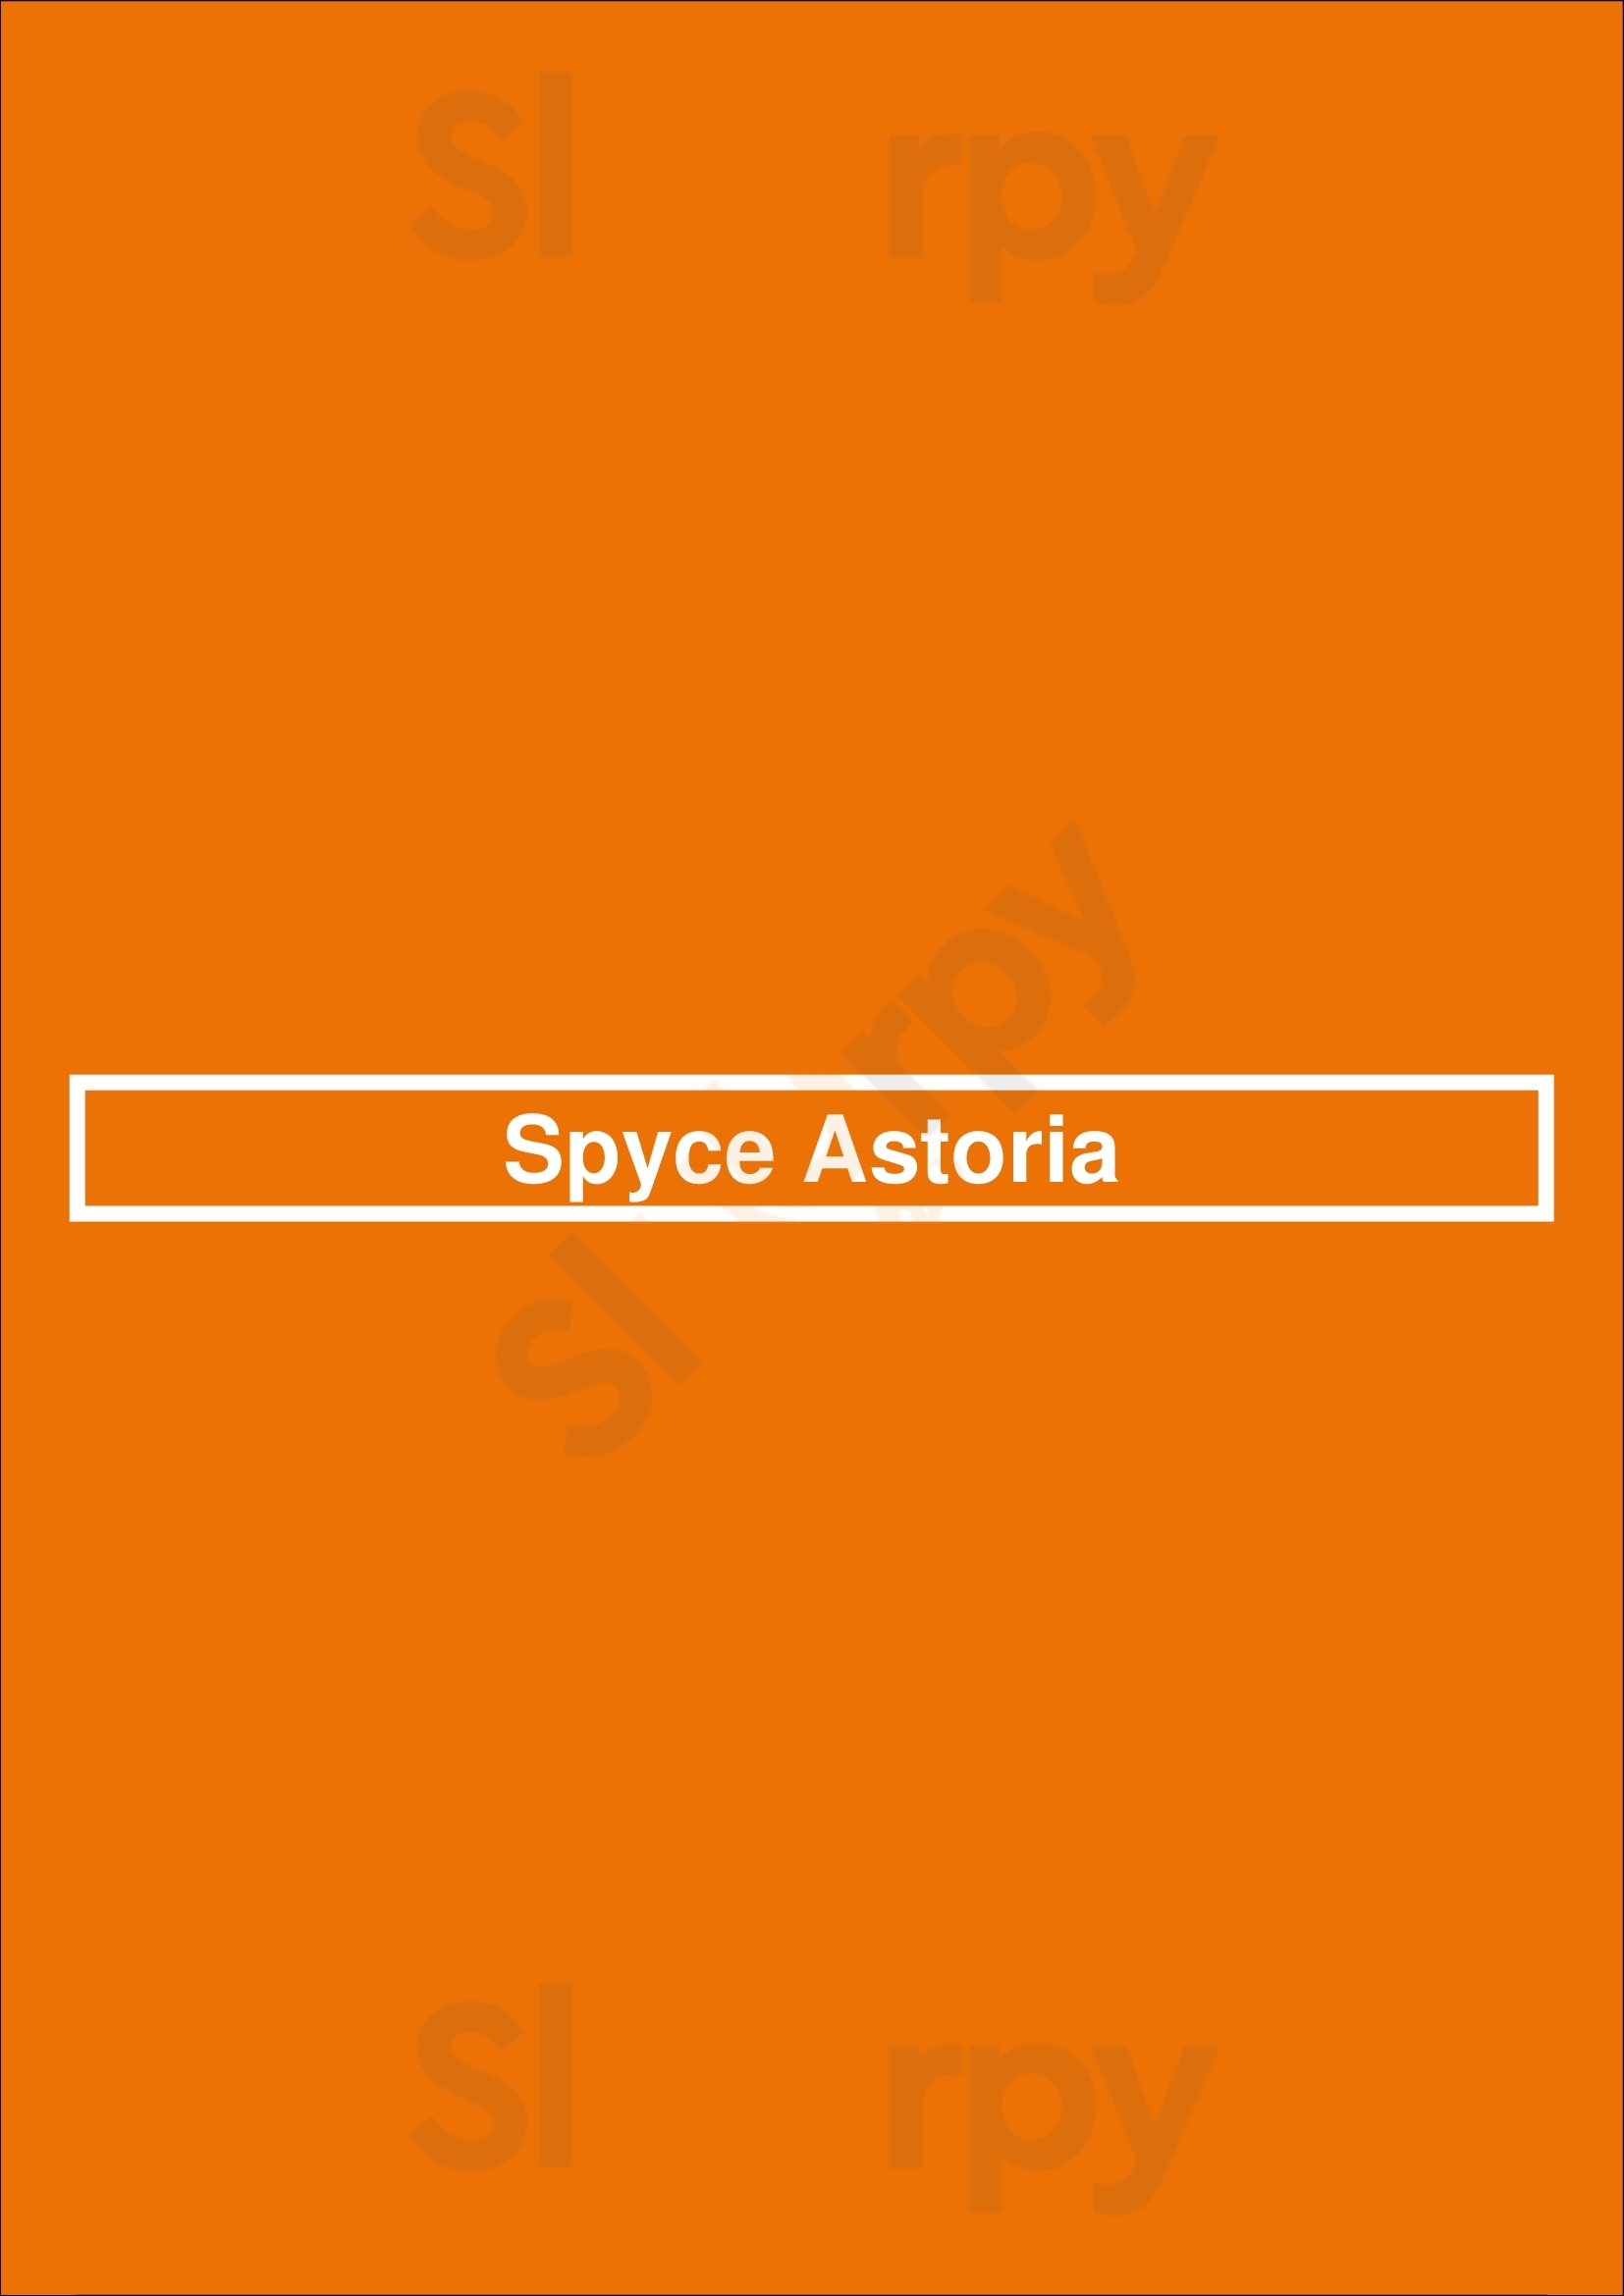 Spyce Astoria Astoria Menu - 1